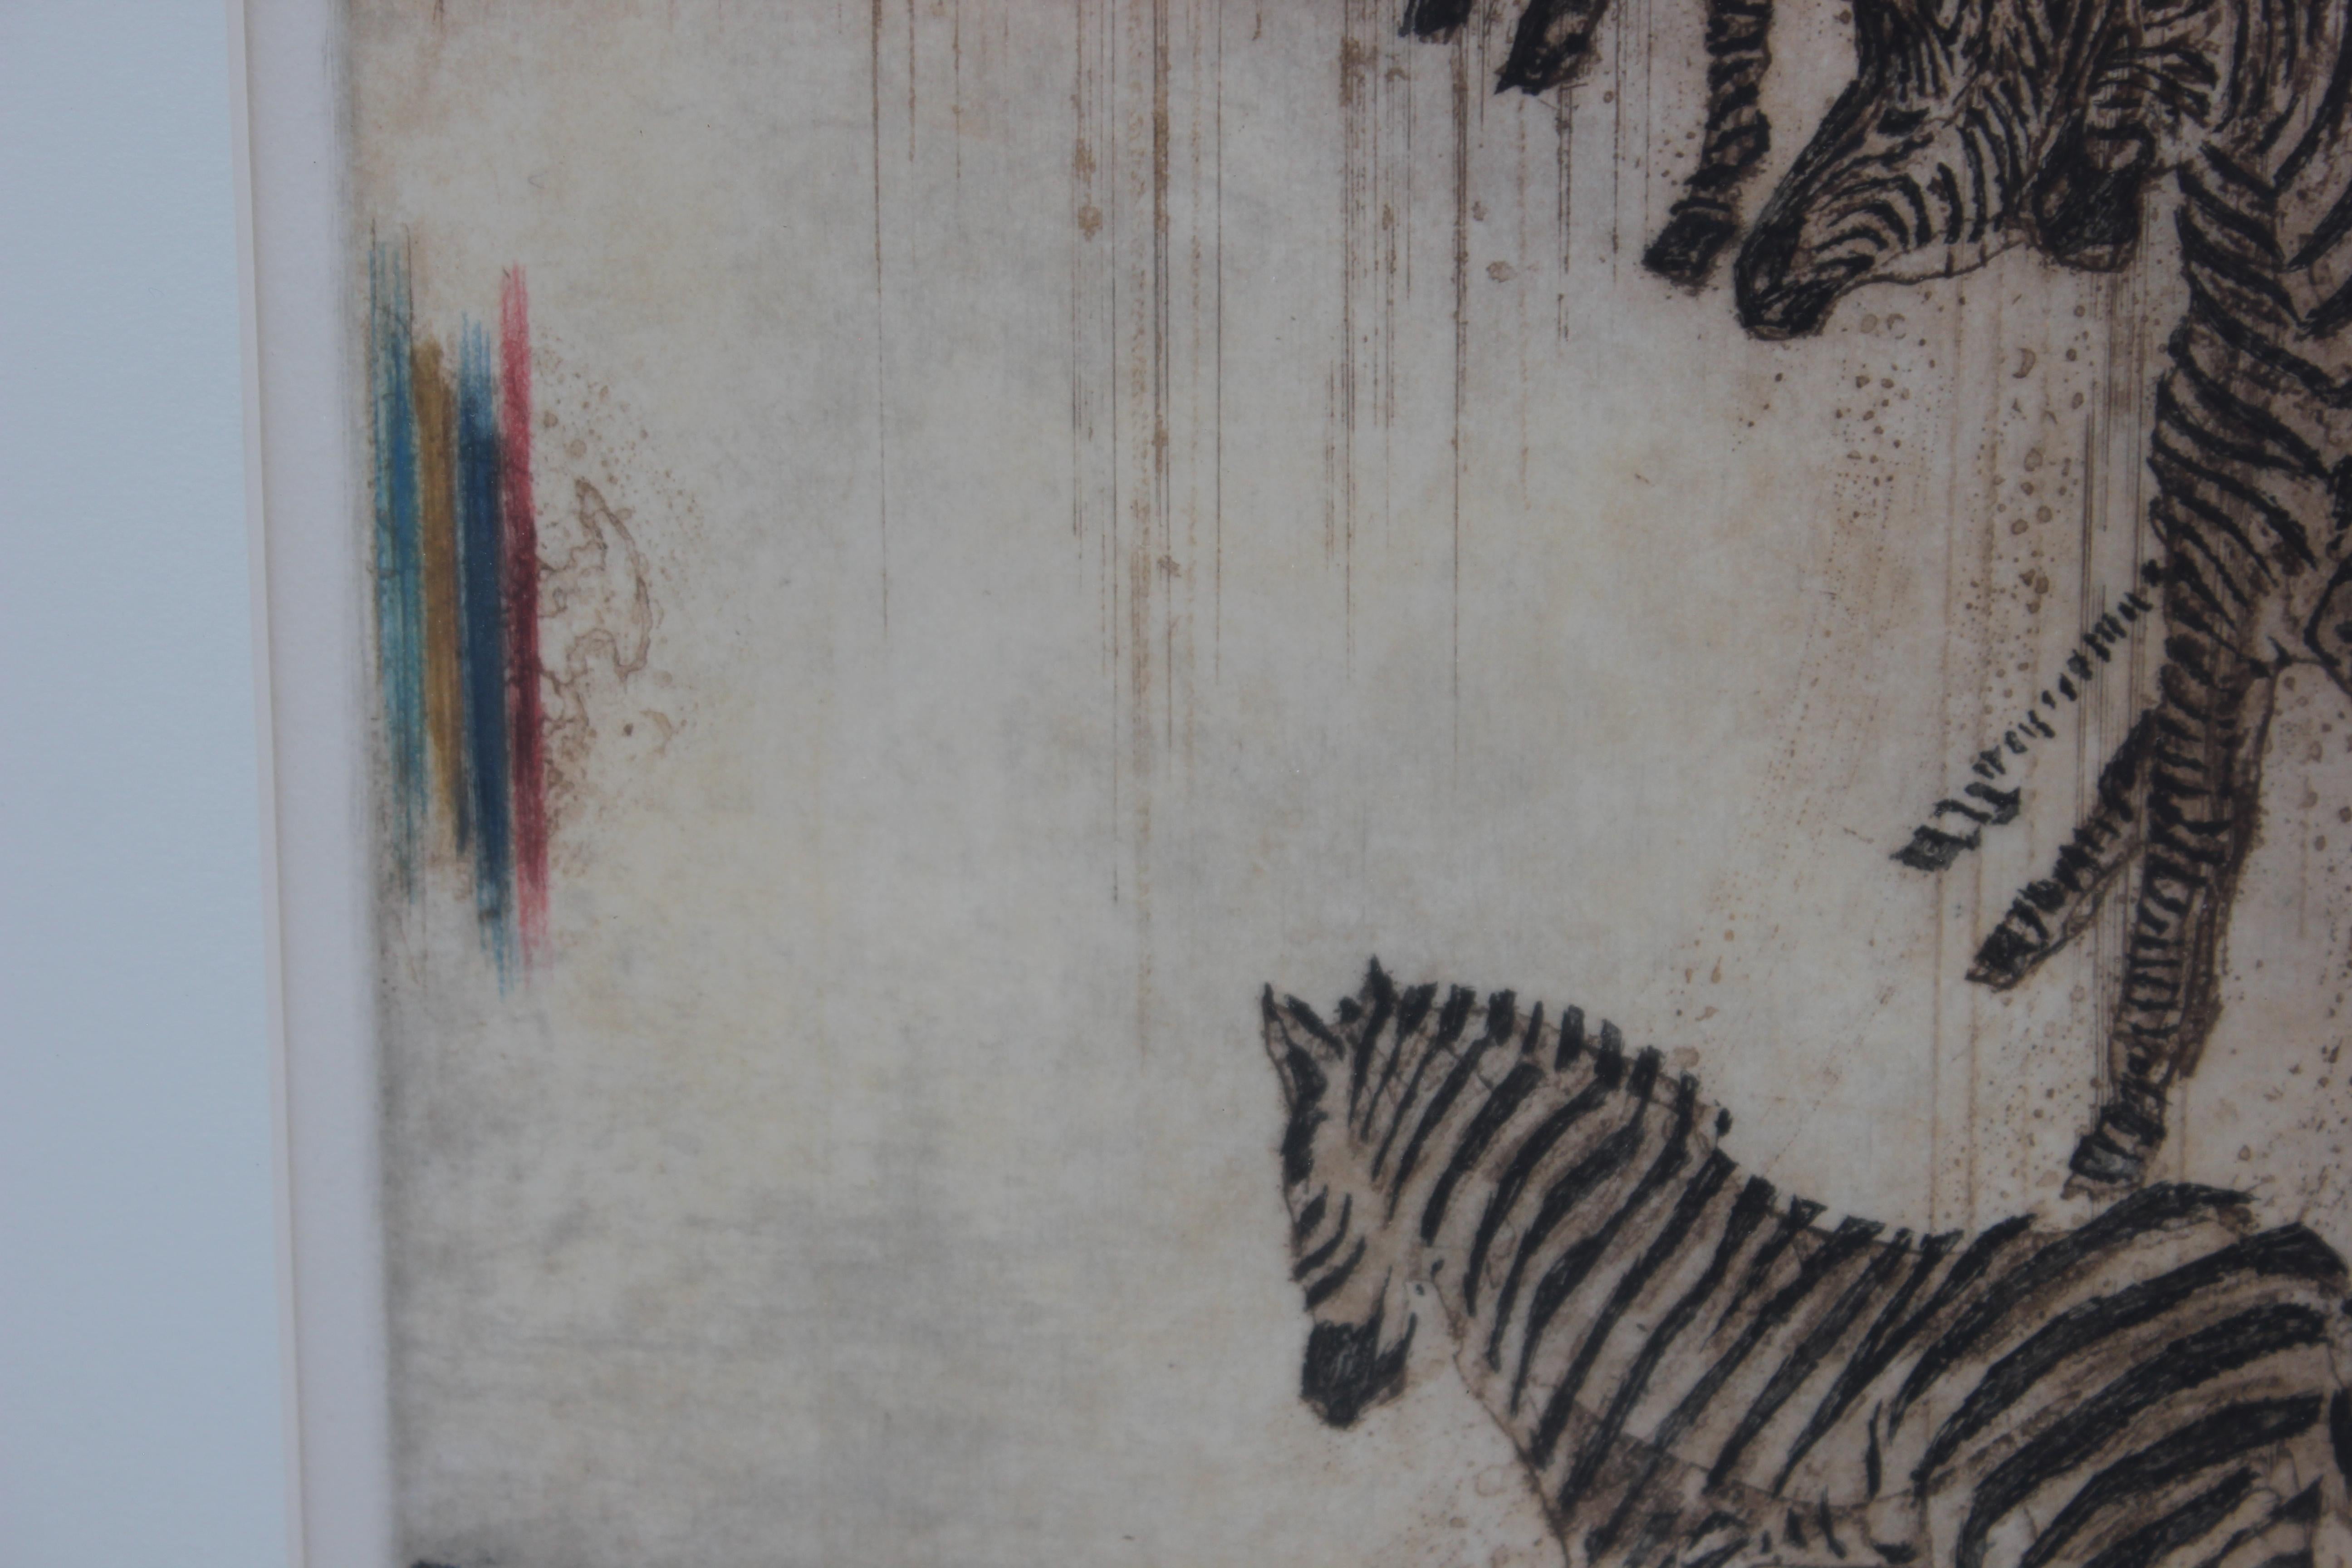 Scene Of a Rainbow And Zebras - Modern Print by Junichiro Sekino